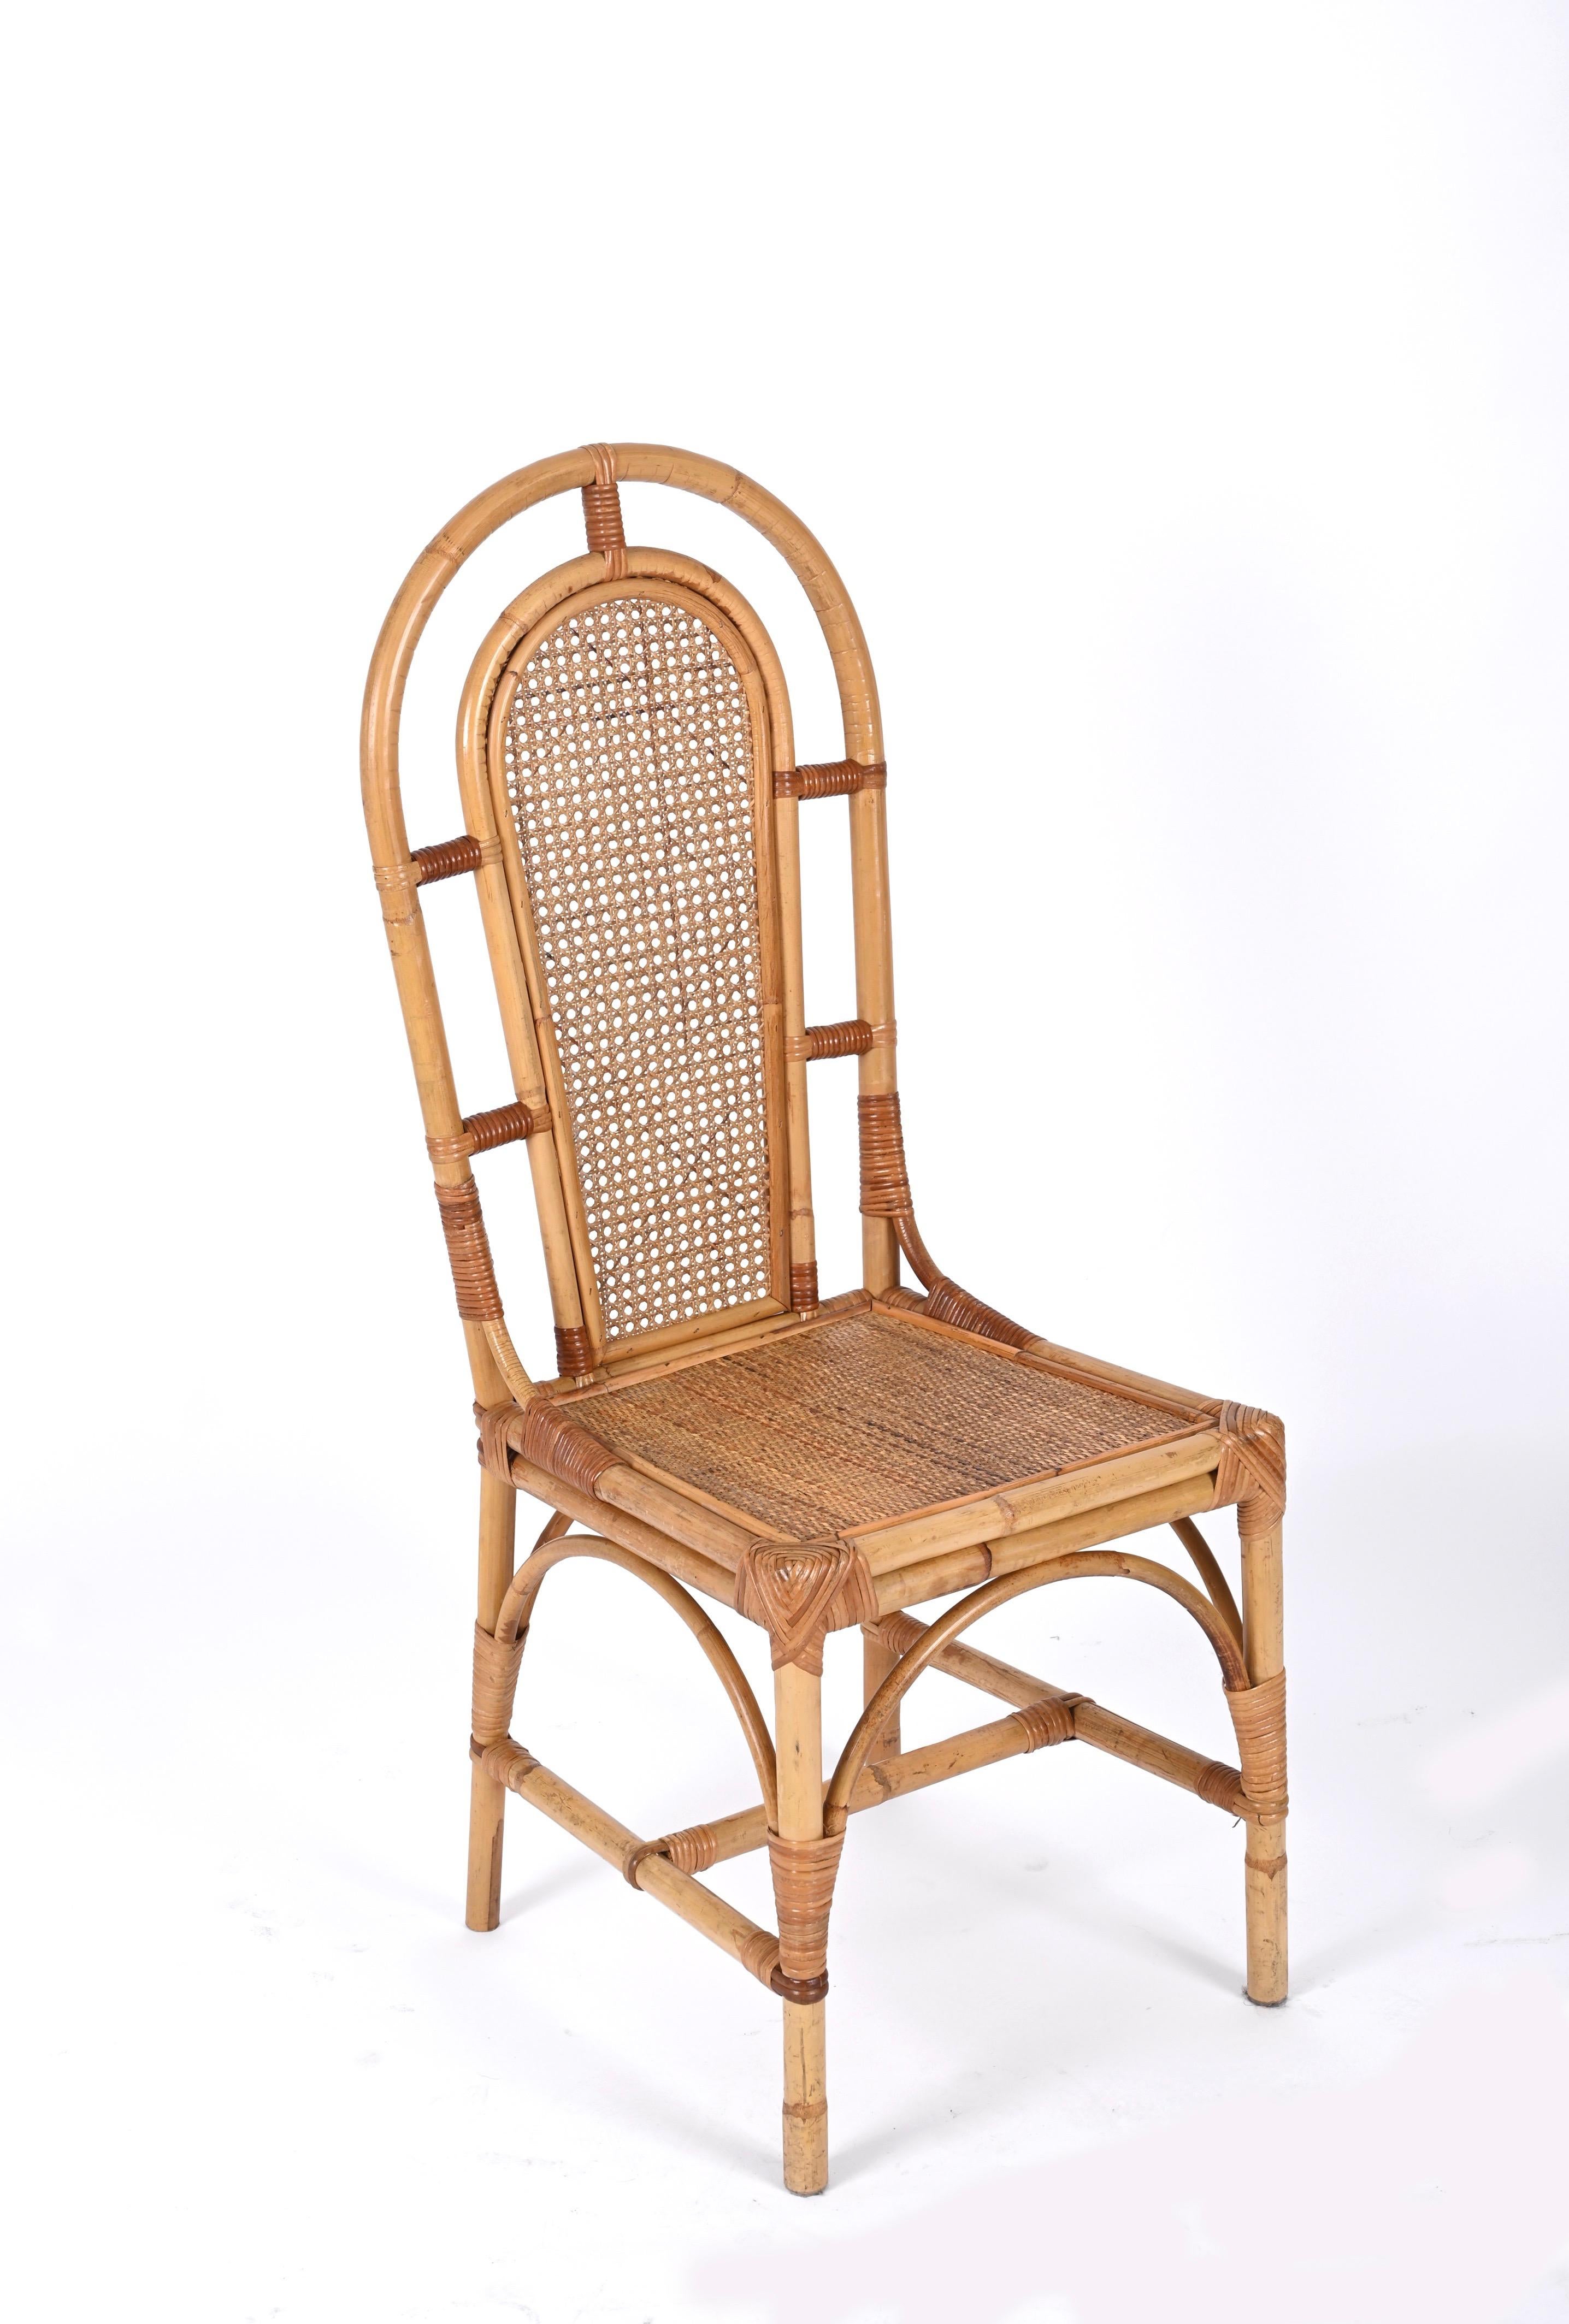 Fantastischer Satz von vier Esszimmerstühlen aus Bambus und Wiener Stroh, entworfen in Italien in den 70er Jahren und Vivai del Sud zugeschrieben. 

Diese unglaublichen Stühle sind ein wunderbares Beispiel für italienische Manufakturarbeit aus den